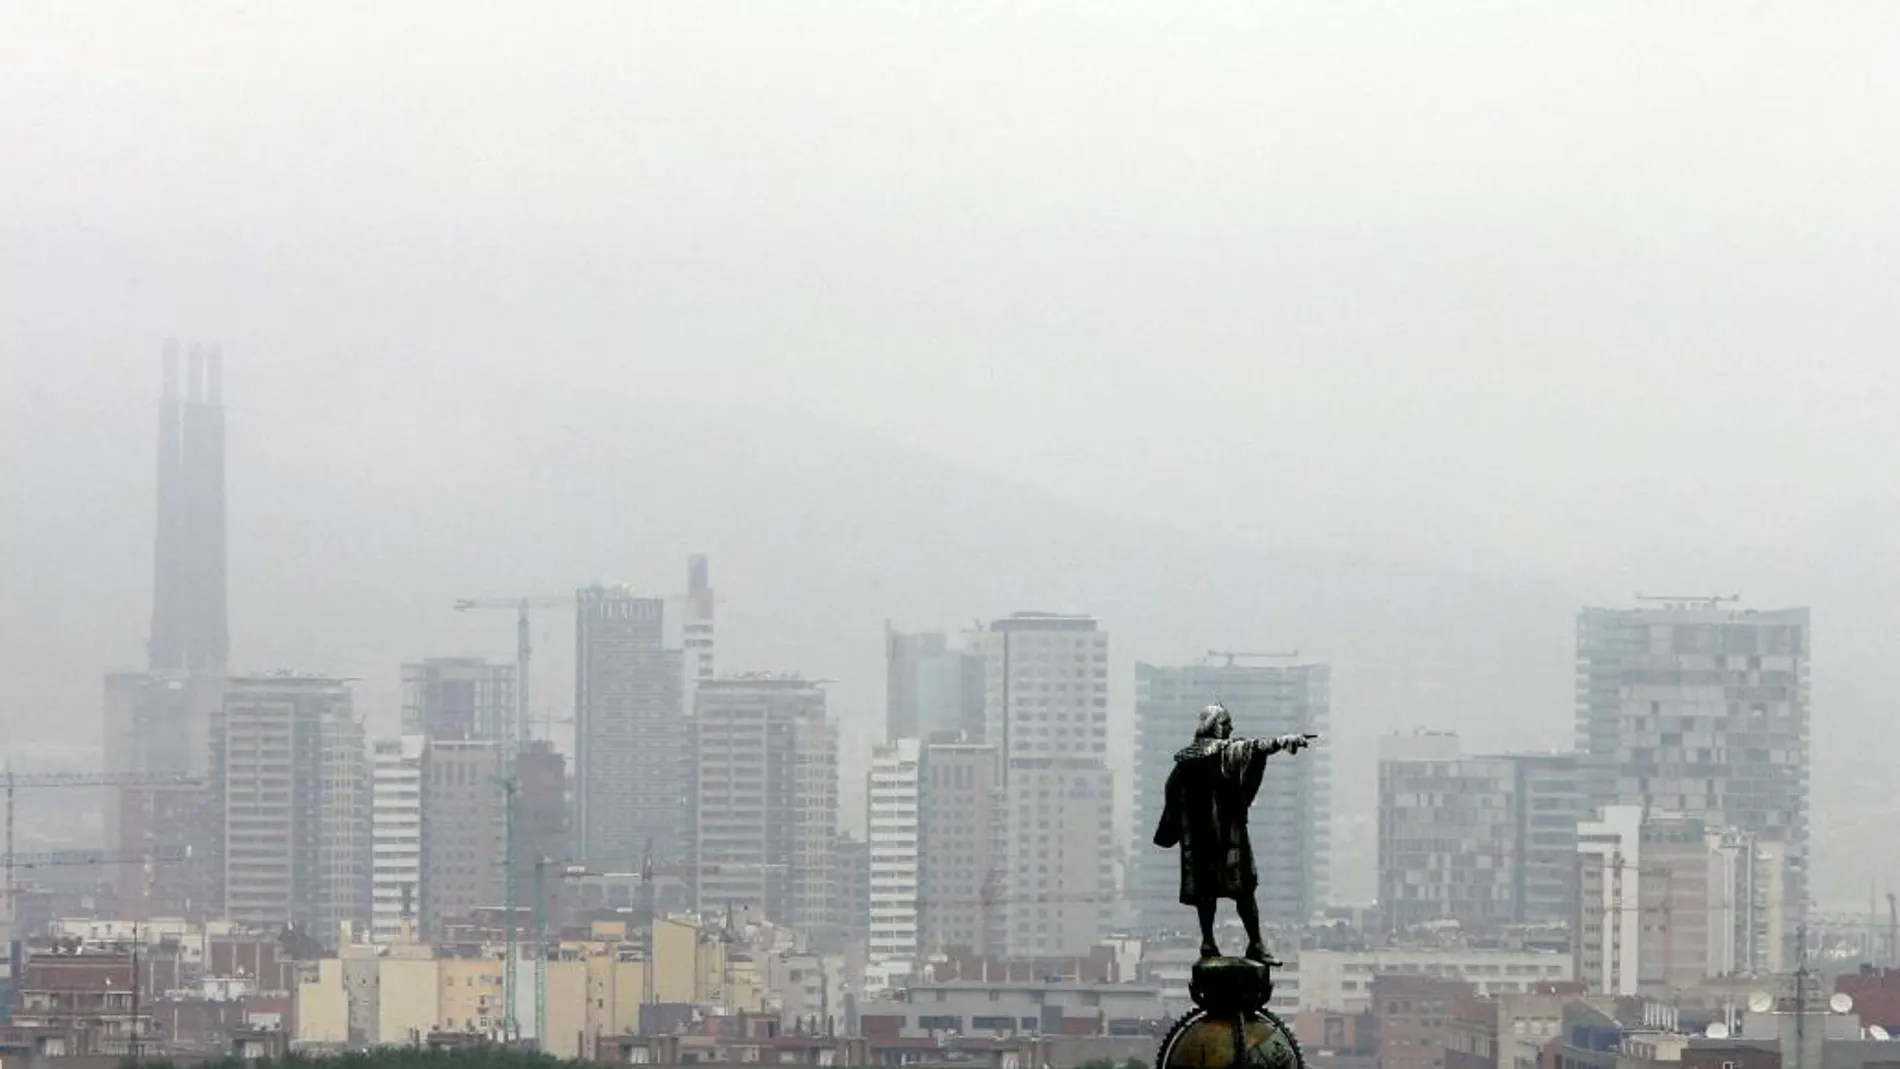 La ciudad de Barcelona, con la estatua de Colón en primer plan